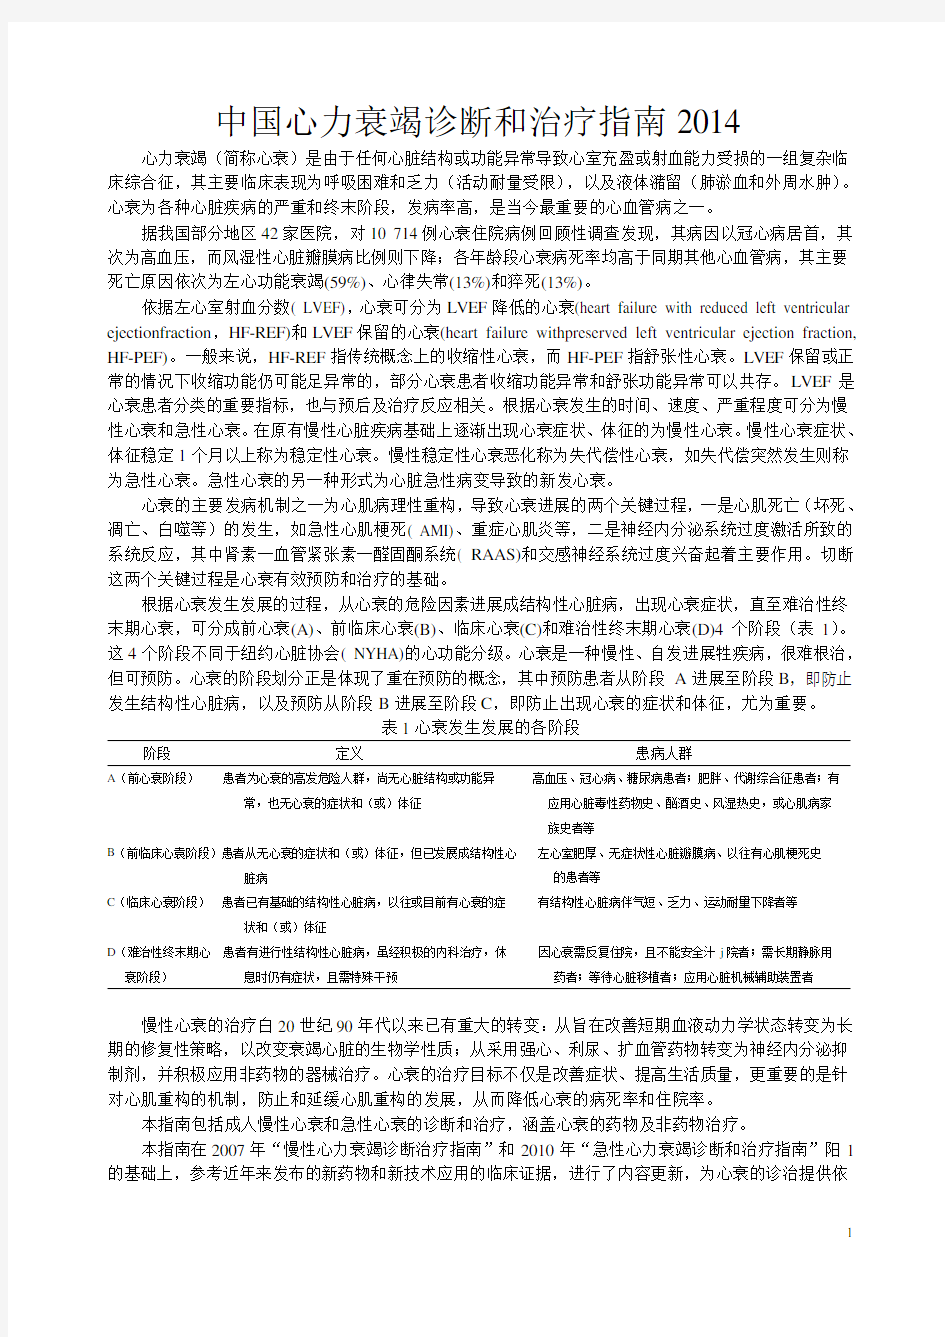 中国心力衰竭诊断和治疗指南2014